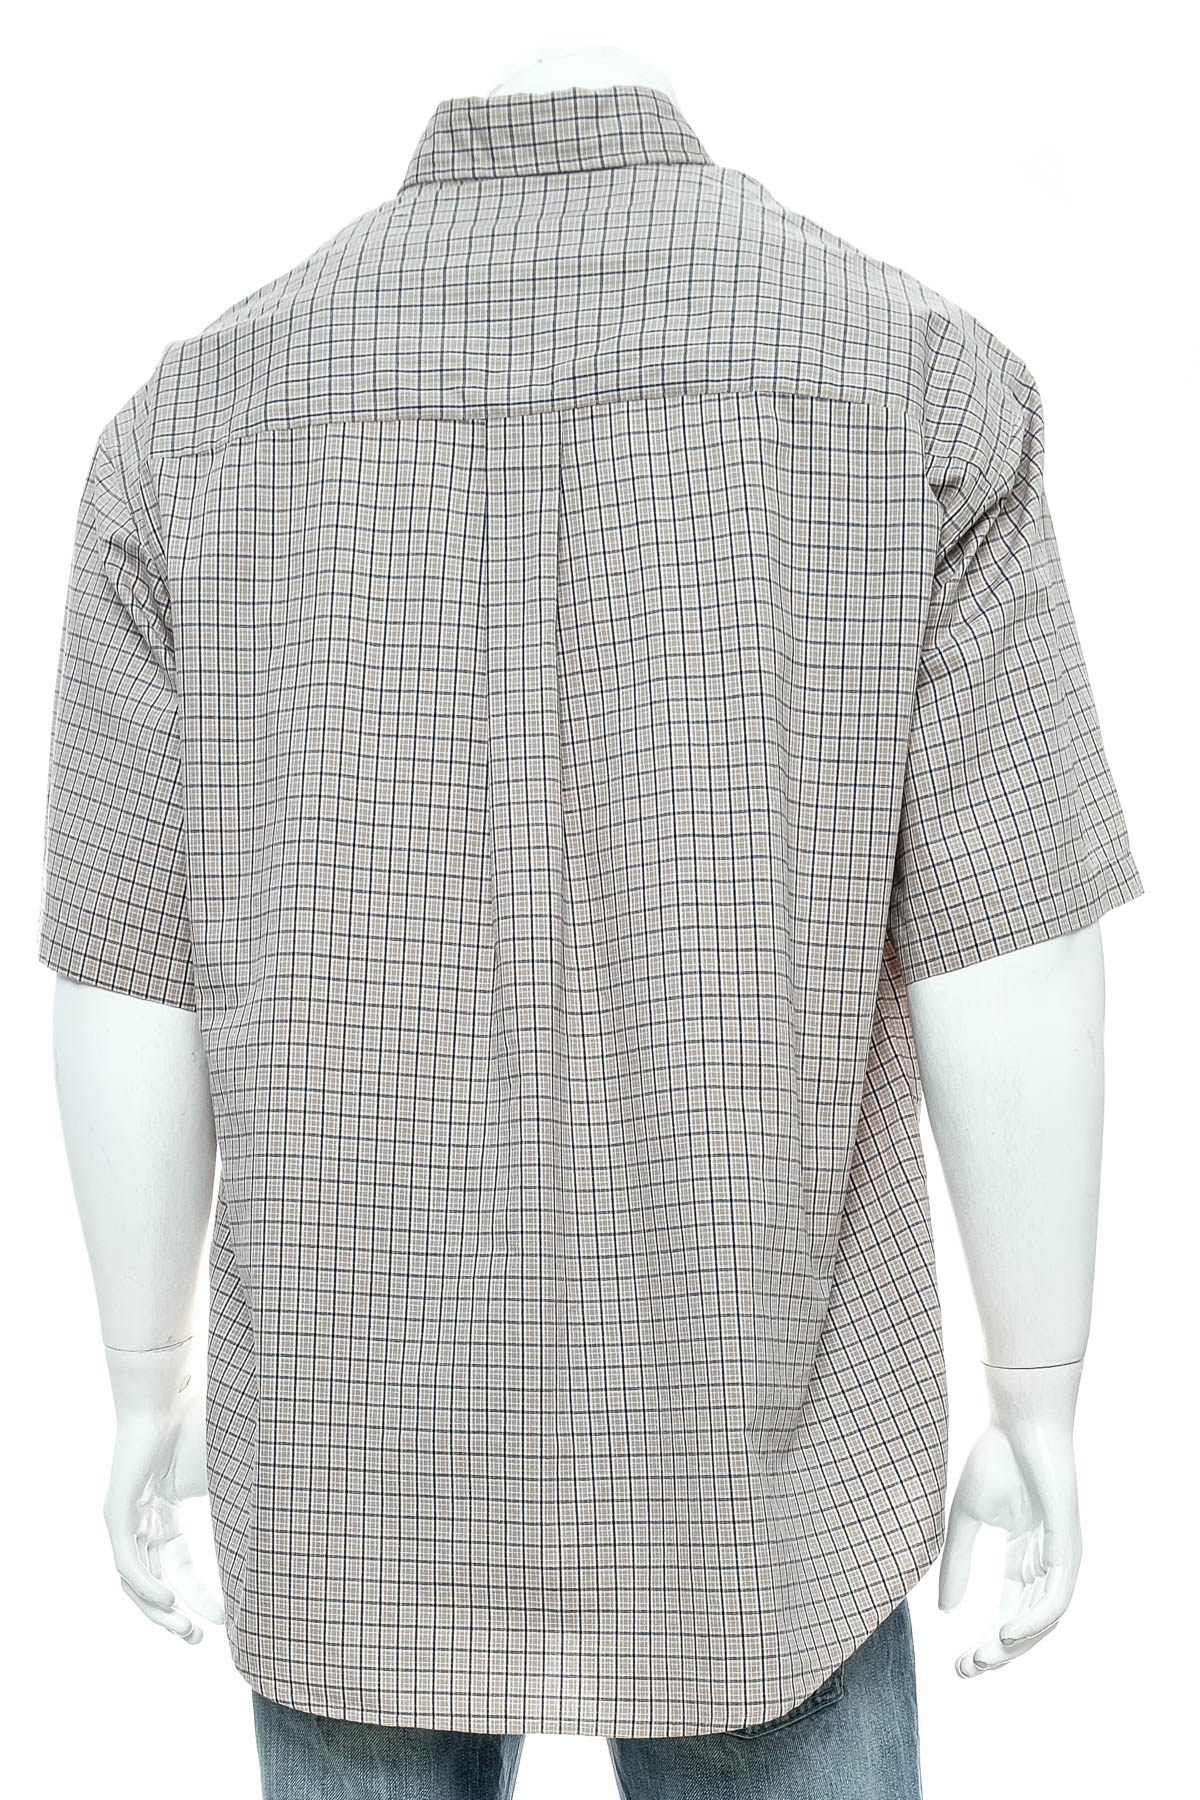 Ανδρικό πουκάμισο - Haggar - 1